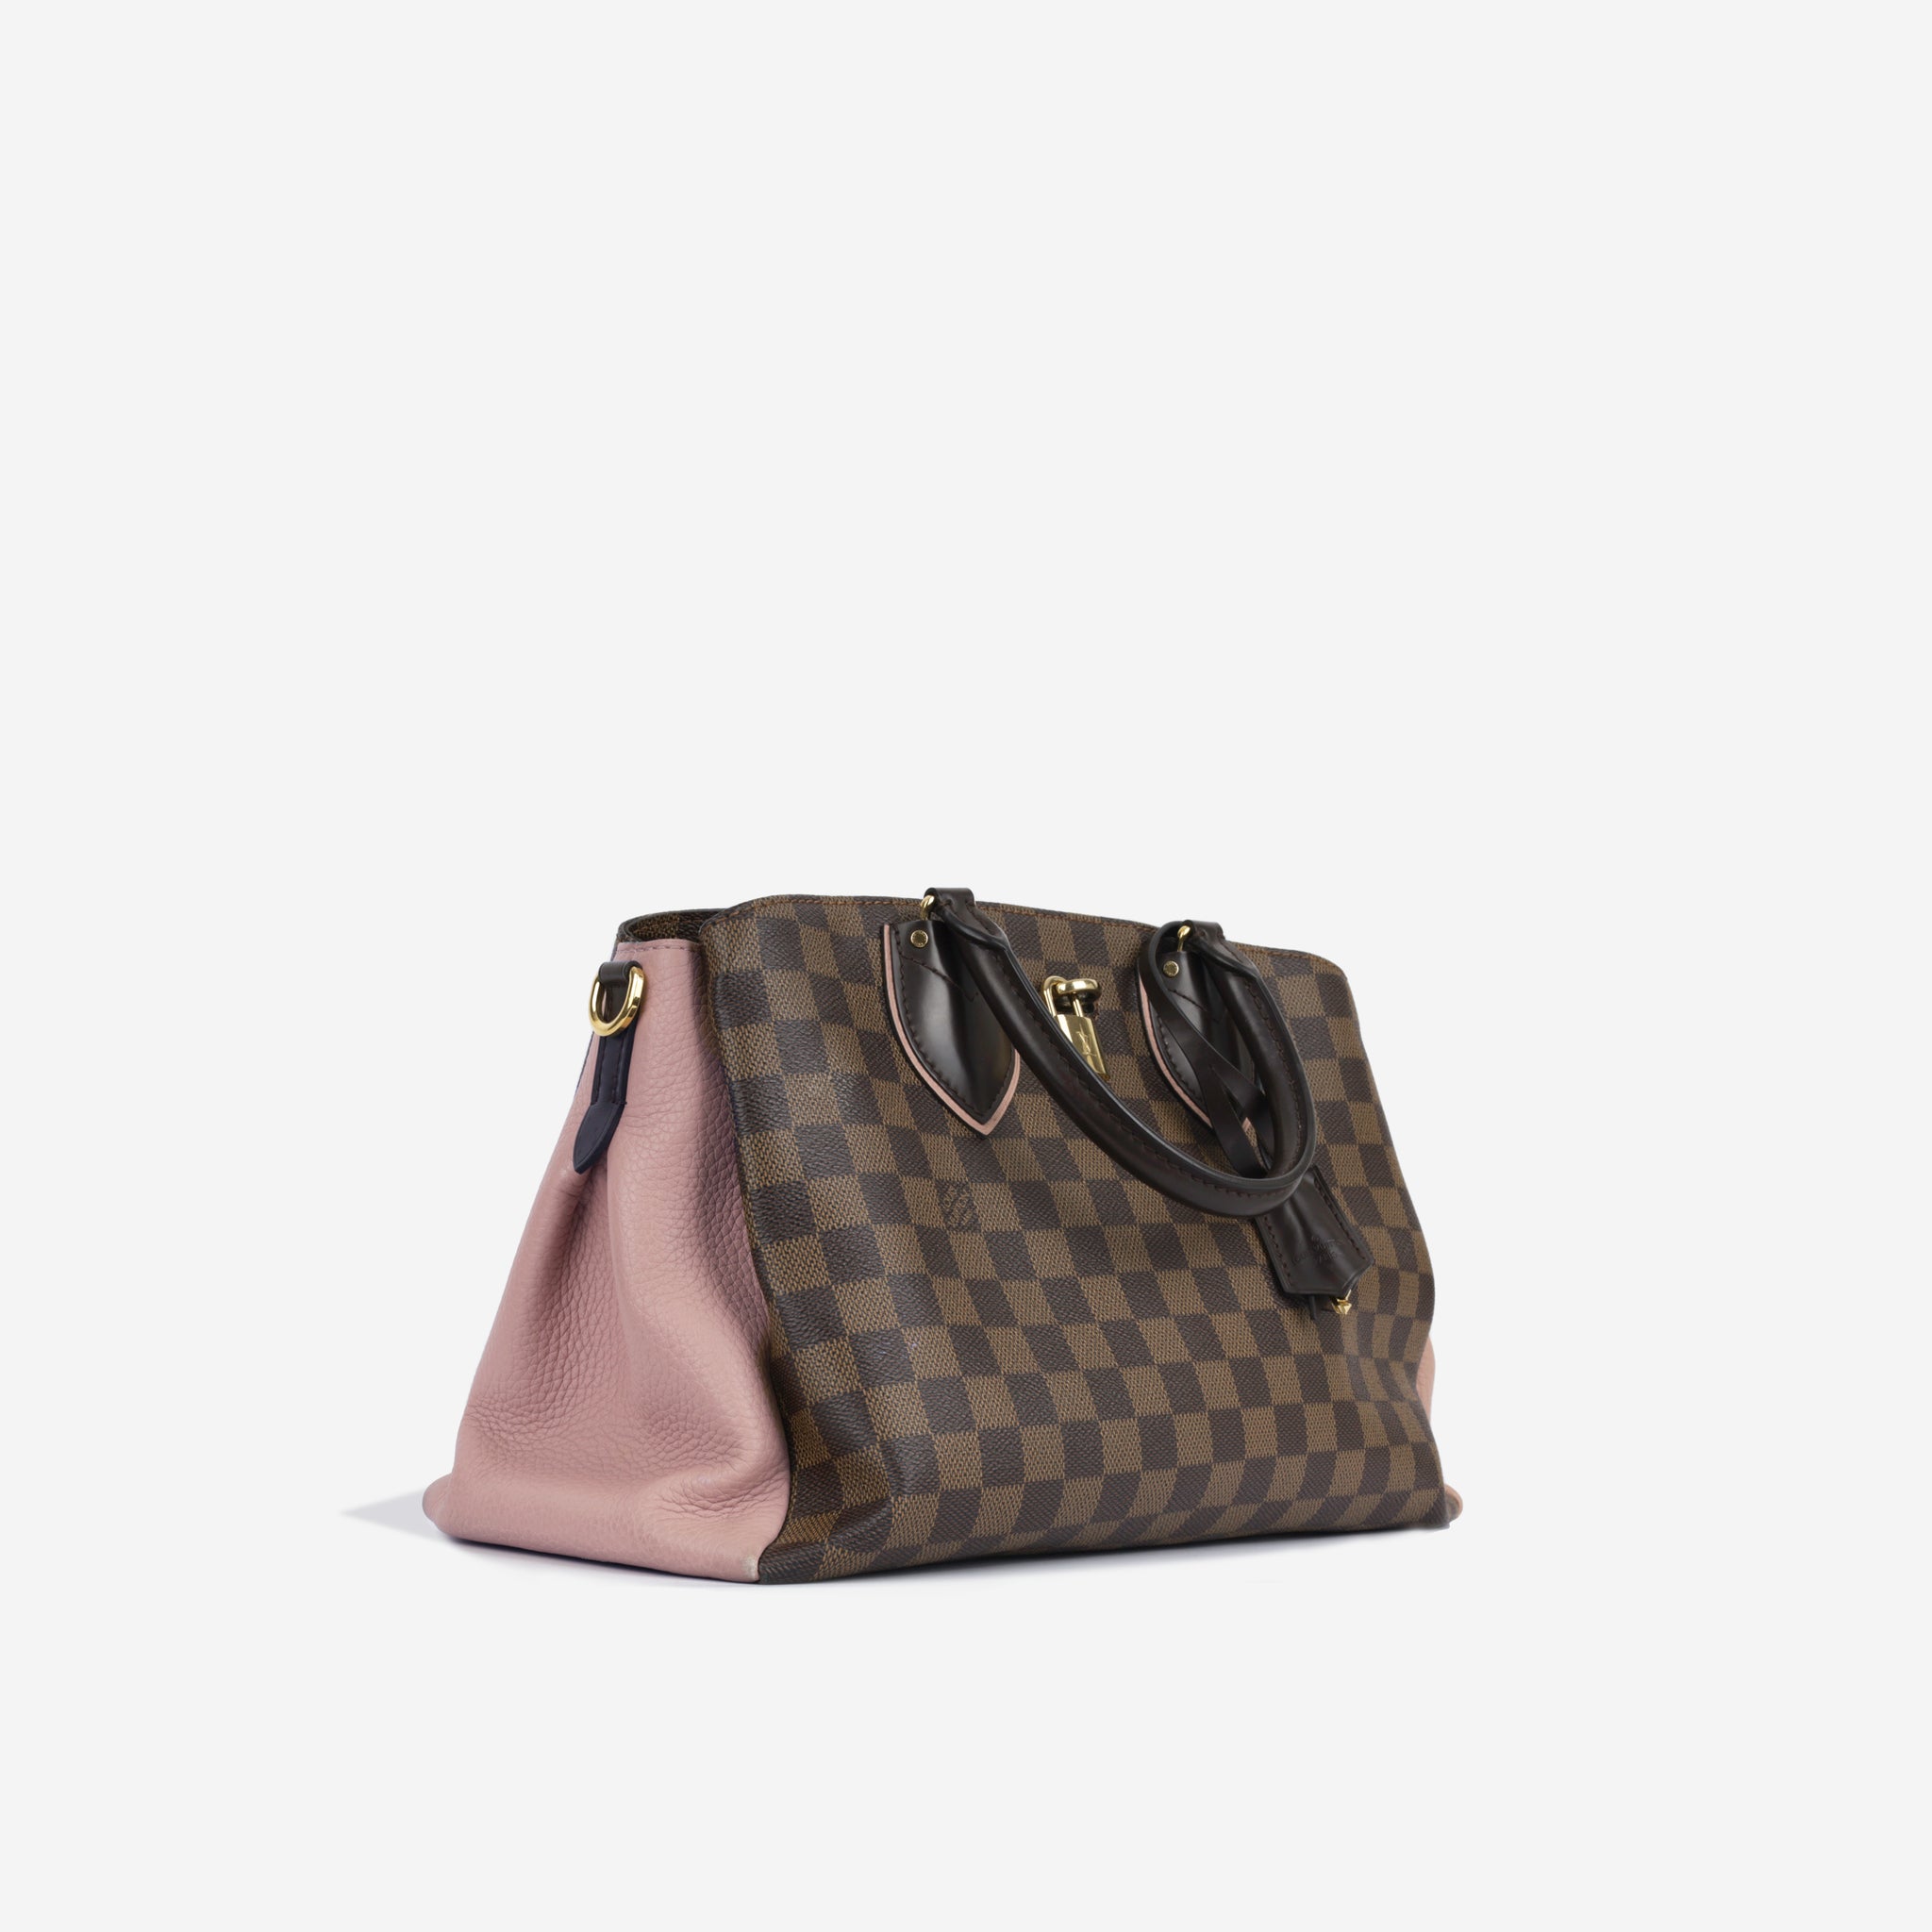 Louis Vuitton Damier Ebene Python Normandy Bag